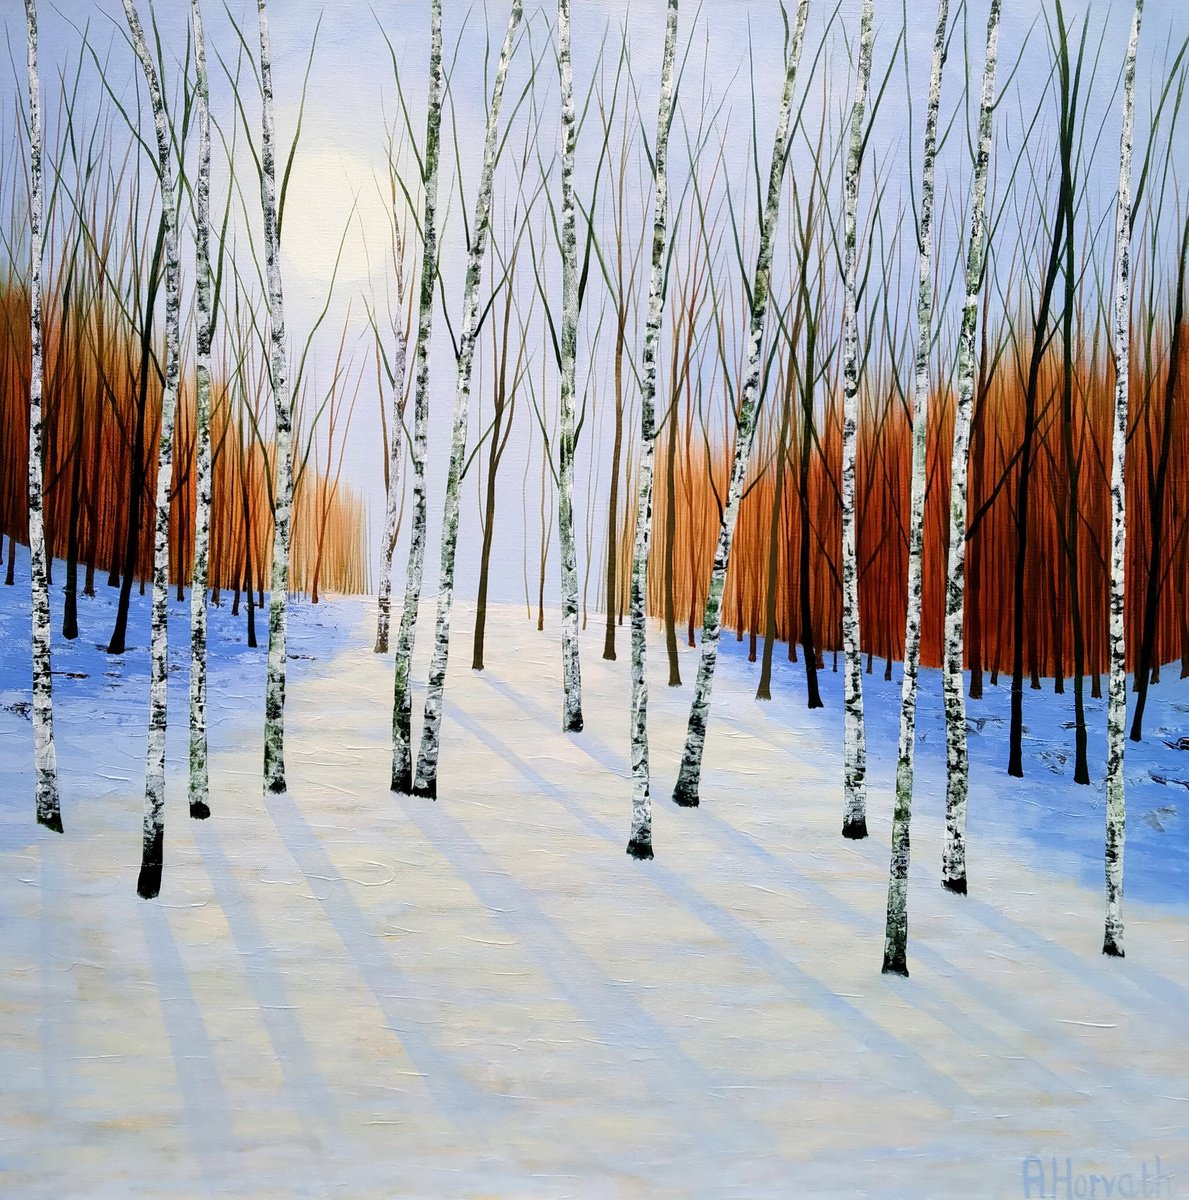 Snowflake Wood by Amanda Horvath